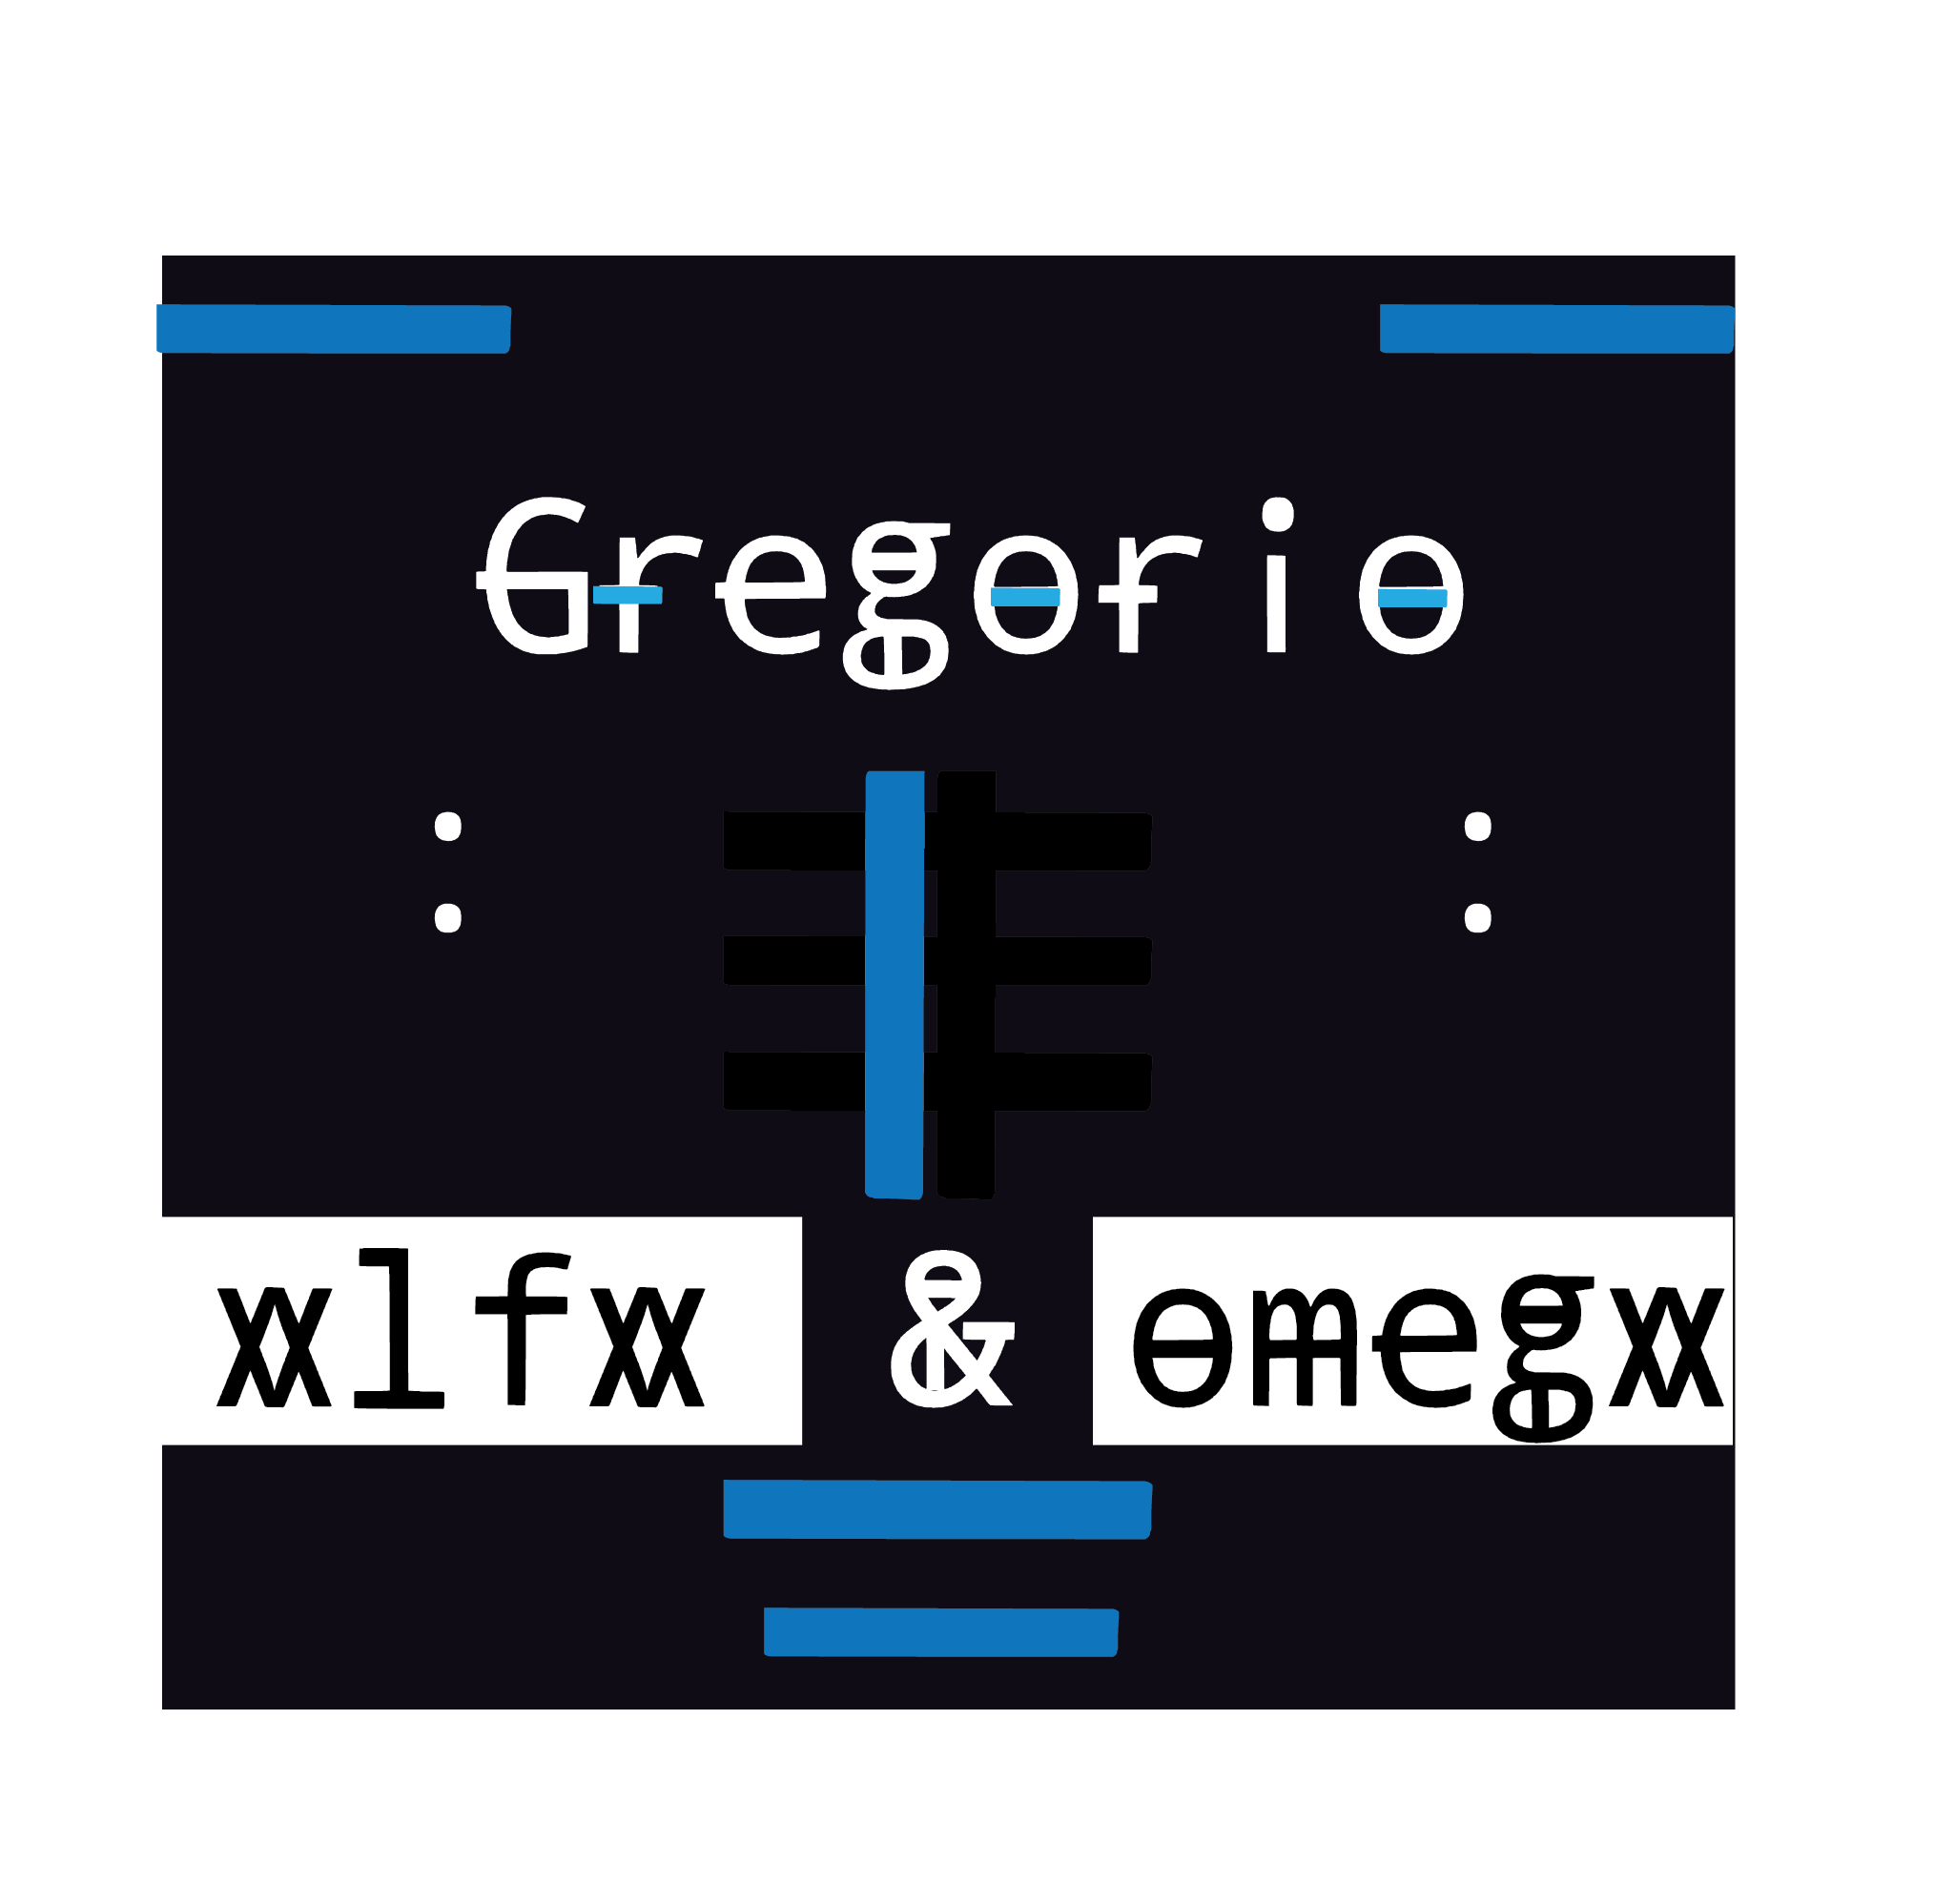 gregoryo